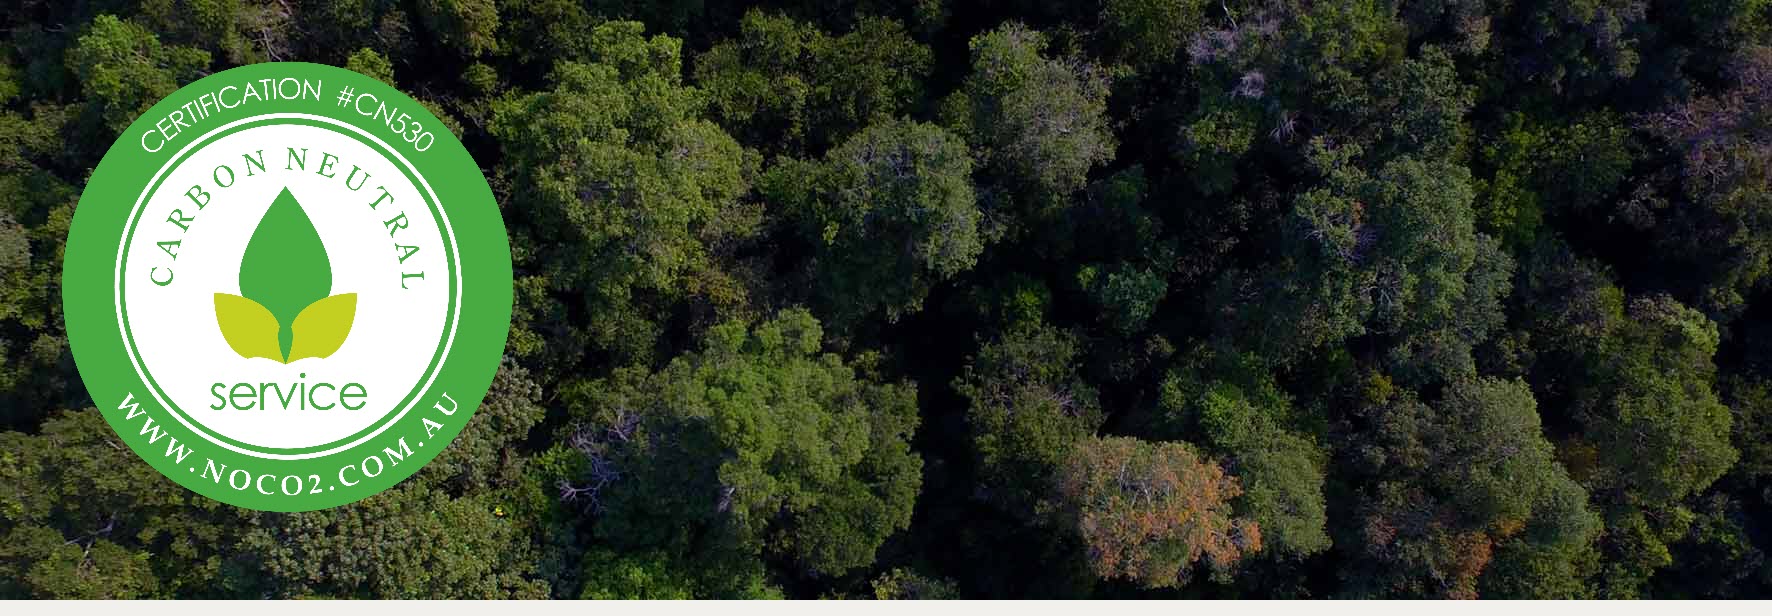 Tree Canopy at Rimba Raya Bio Diversity Reserve